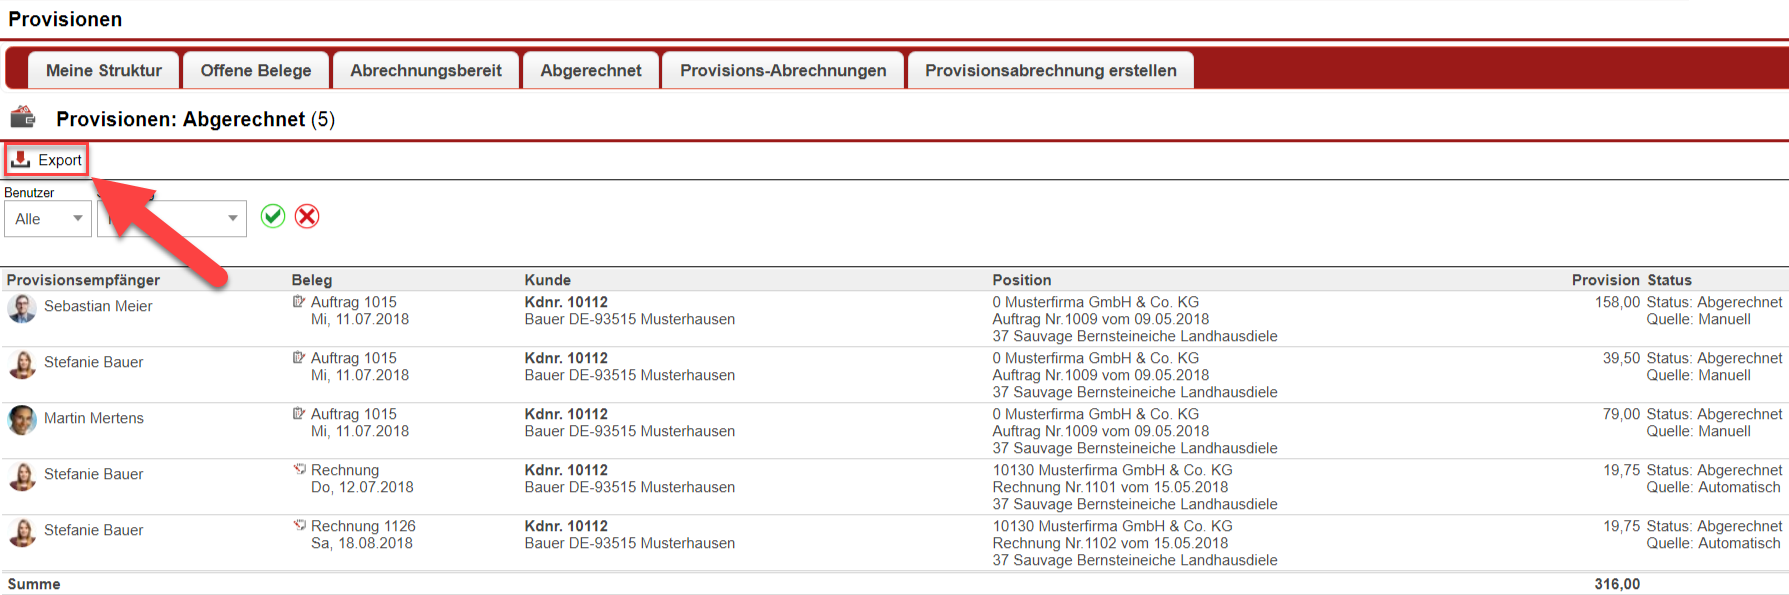 Screenshot der Übersichtsmaske "Abgerechnet" im Provisionsbereich von Fakturex mit Markierung des Export-Buttons